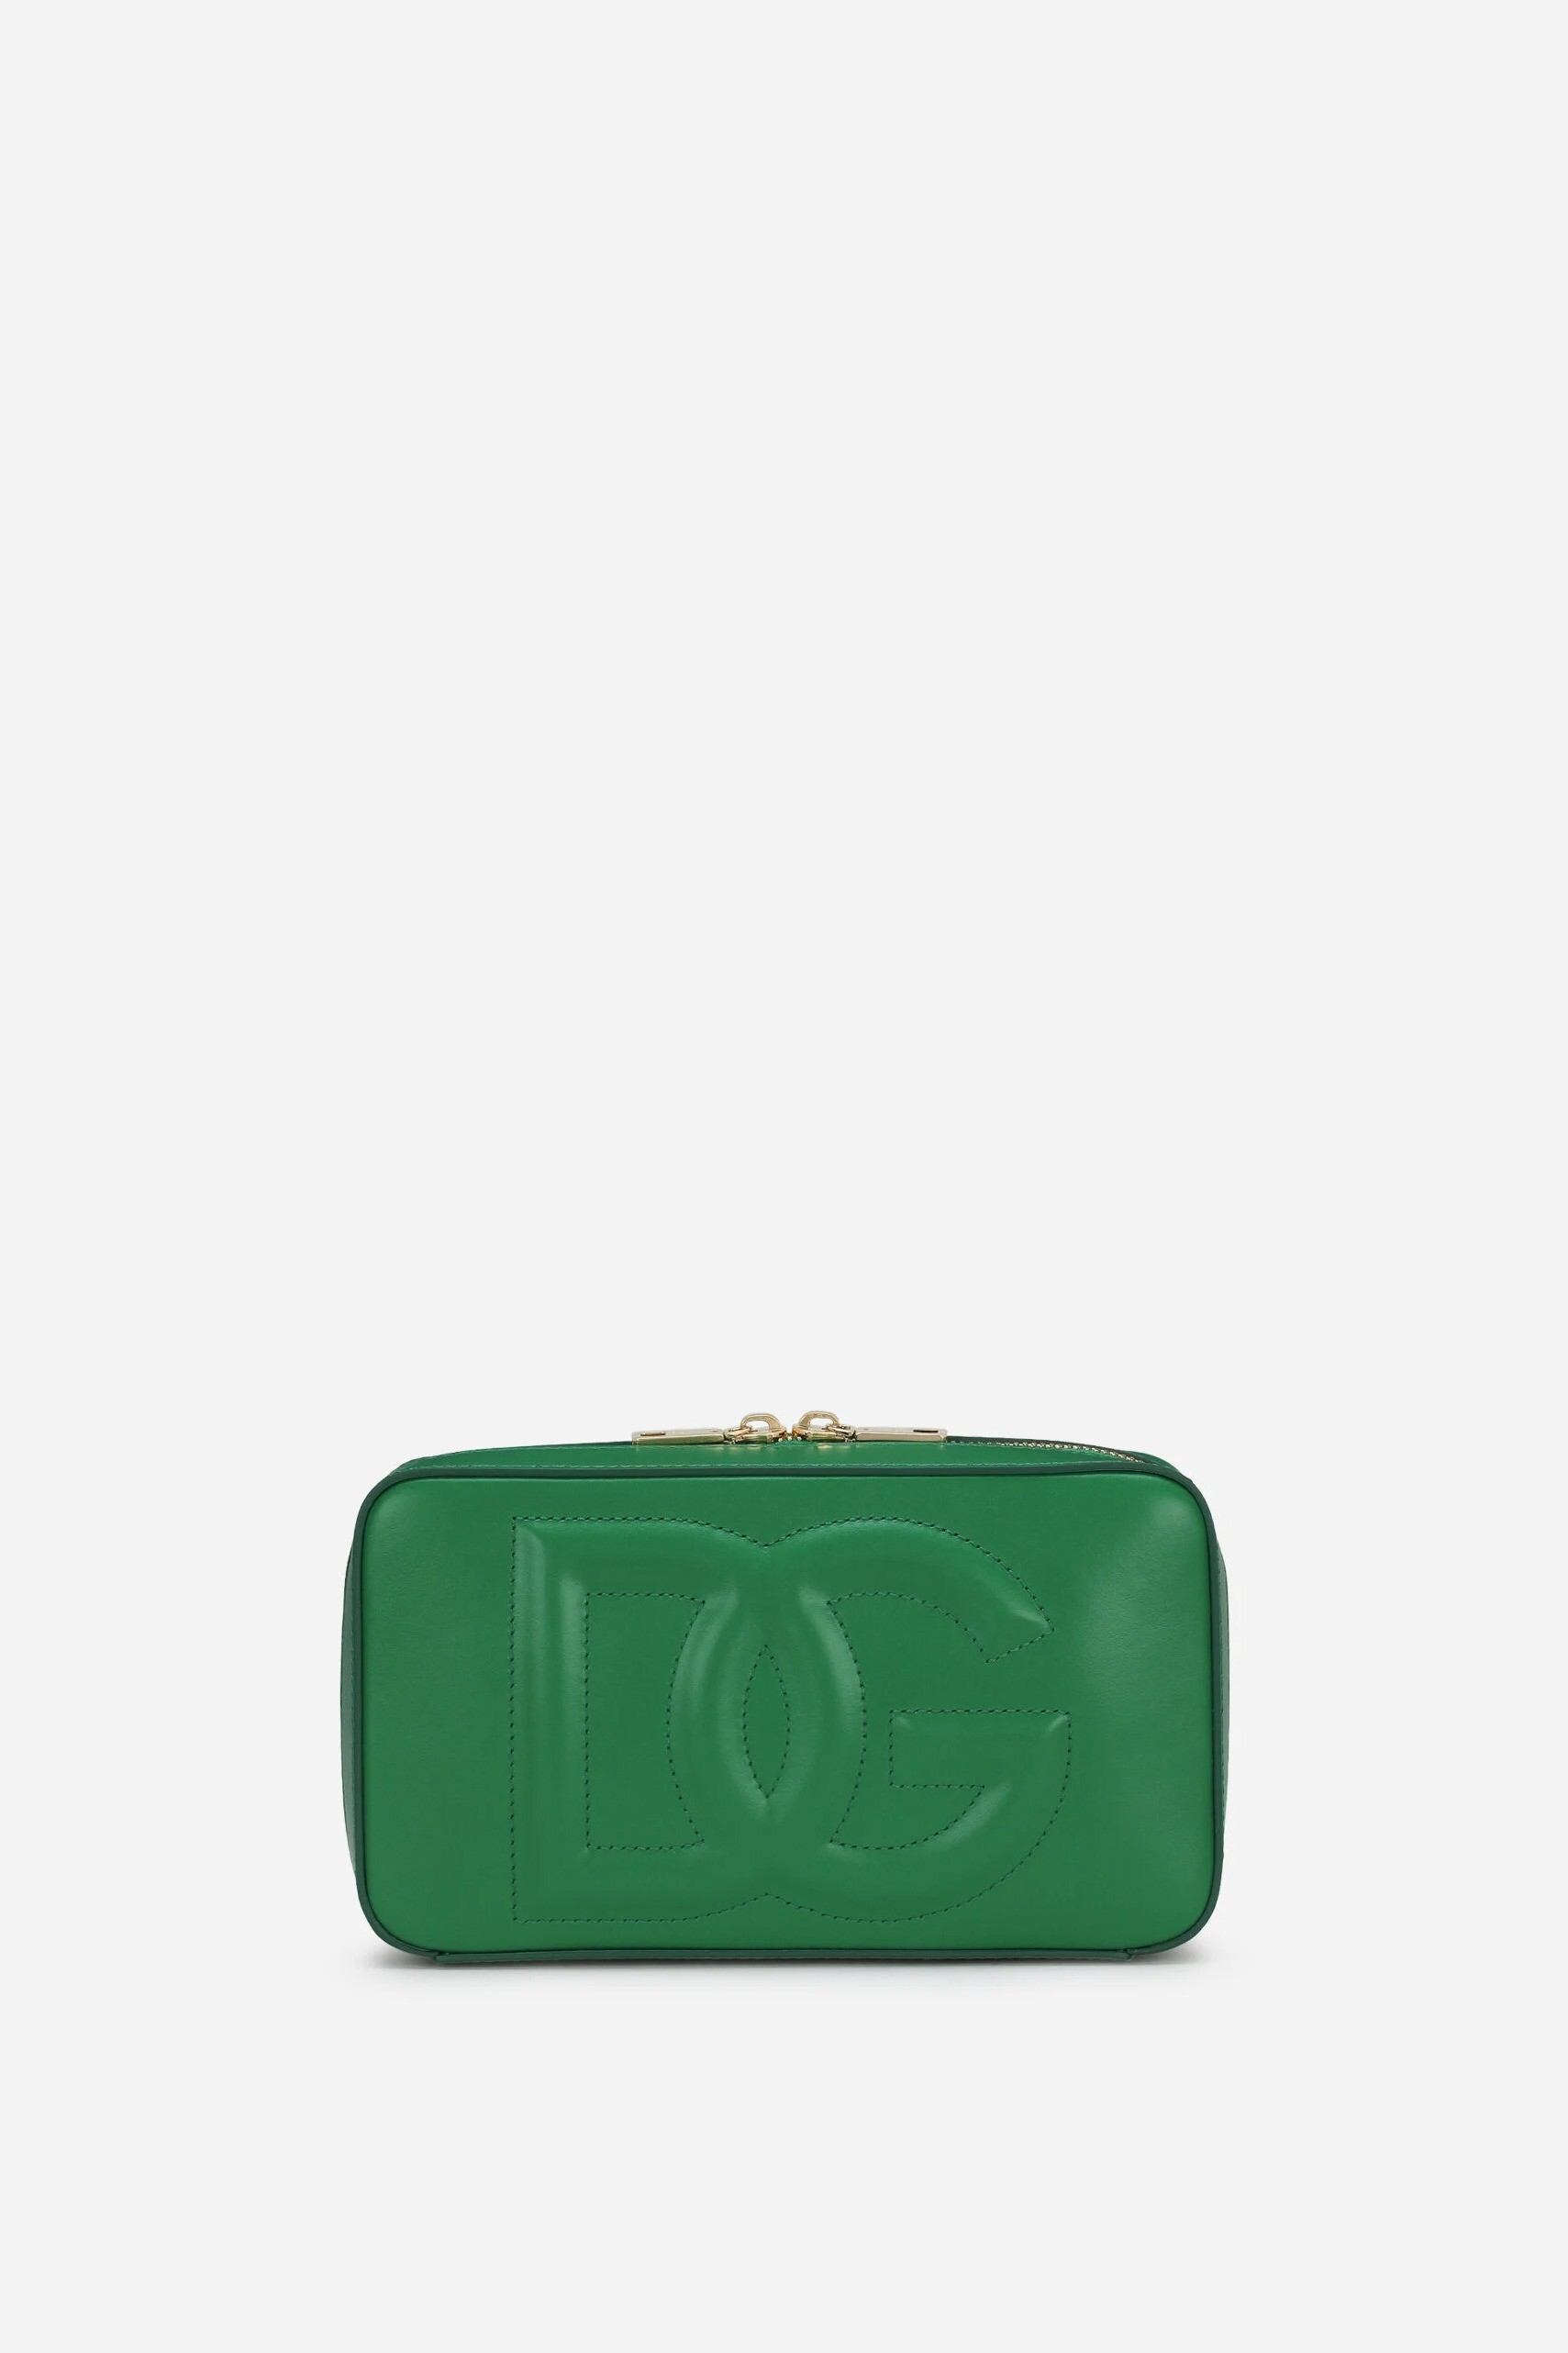 دولتشي غابانا - حقيبة G LOGO صغيرة - أخضر